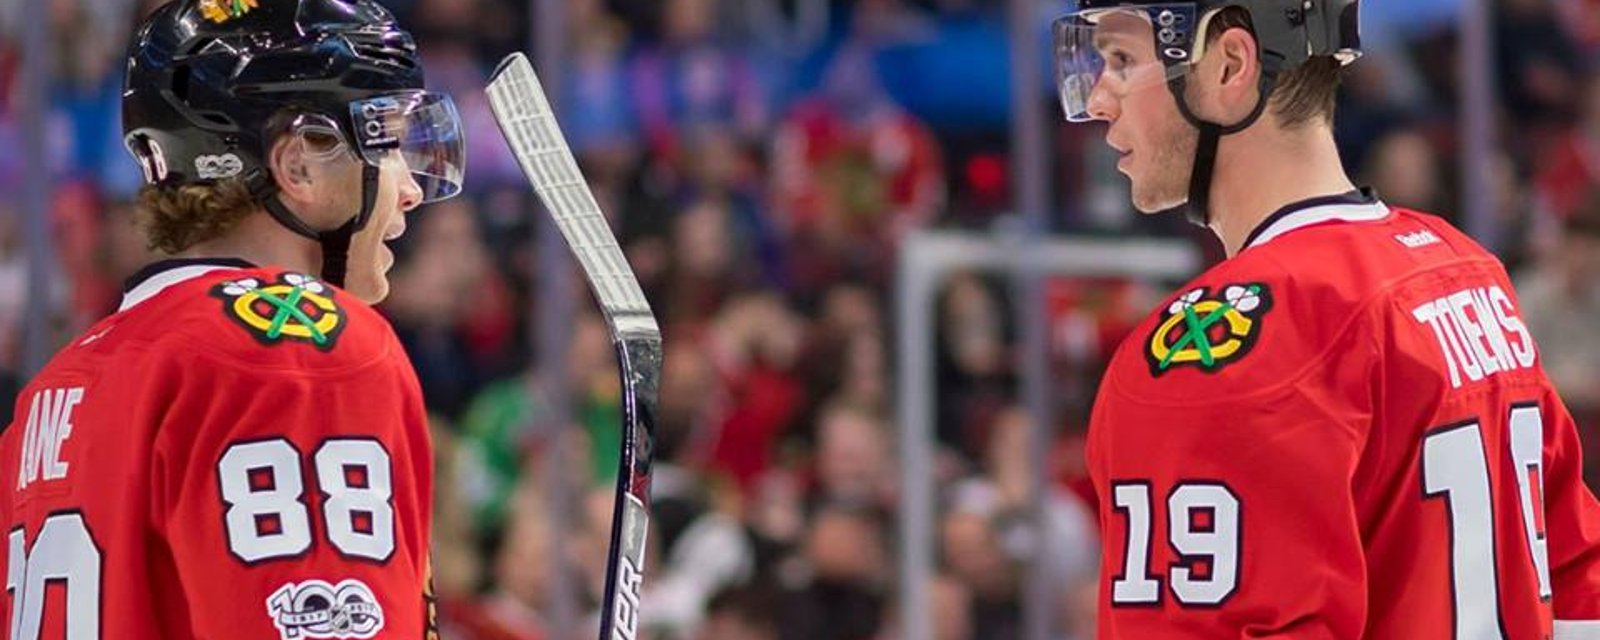 Hawks top prospect set to make NHL debut!